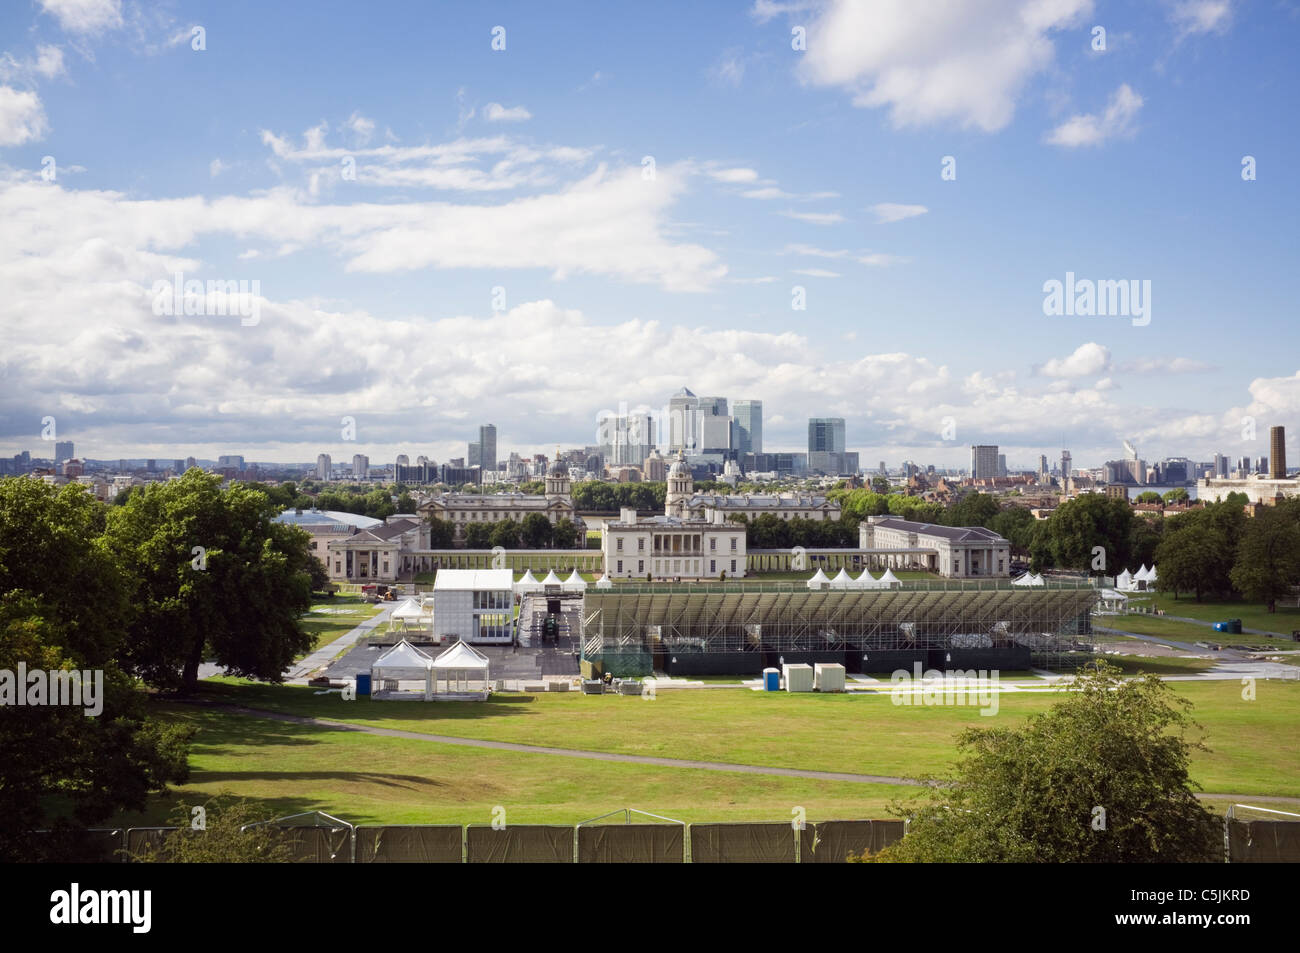 Vue de l'organisation des Jeux Olympiques de 2012 equestrian events Lieu et stade de la Maison de la Reine. Le Parc de Greenwich, London, England, UK, Grande-Bretagne Banque D'Images